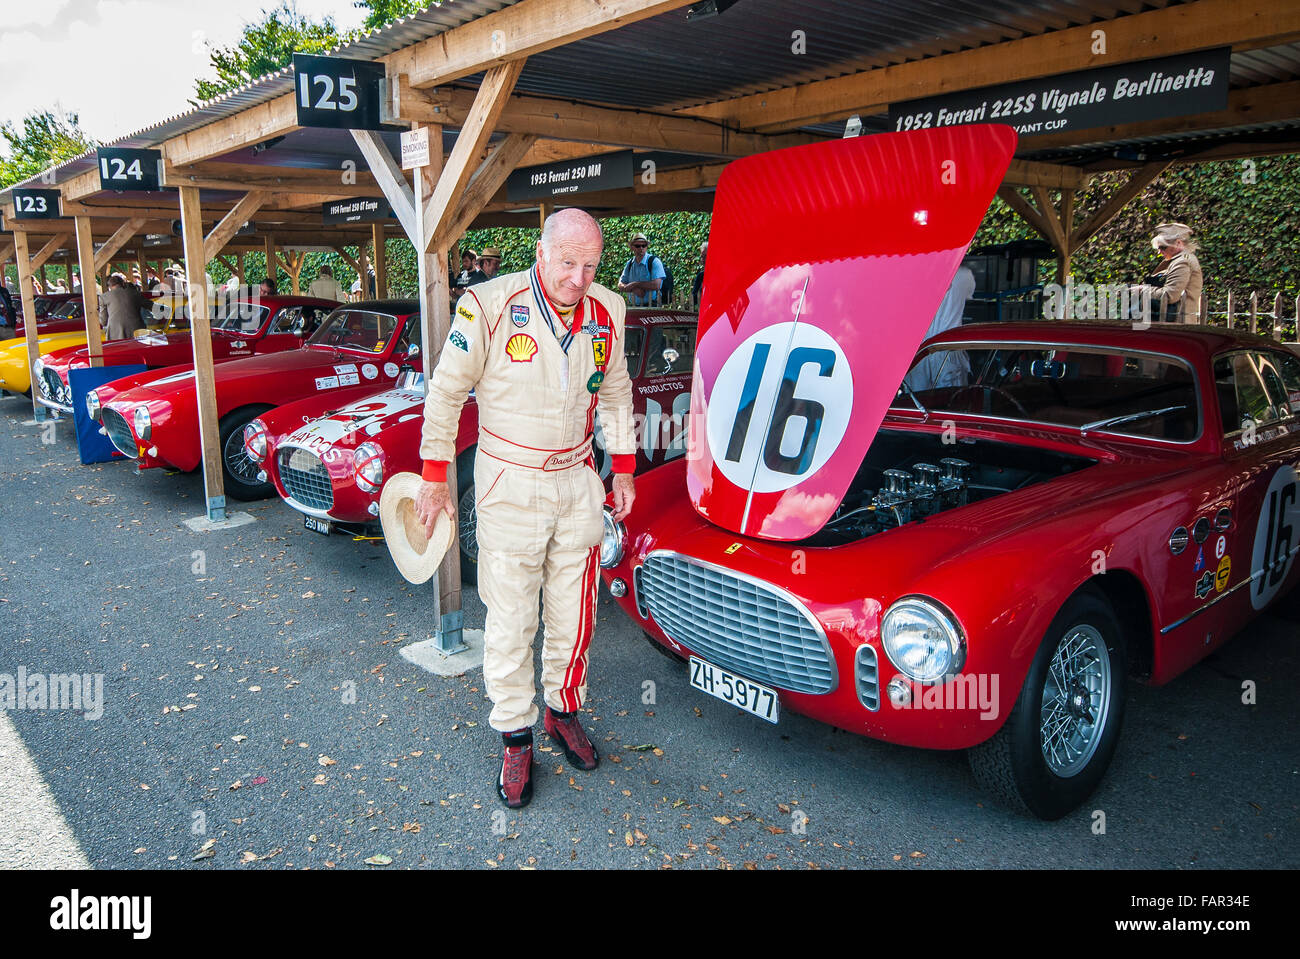 Rennfahrer David Franklin, die eine Vintage Ferrari in der Lavant Cup beim Goodwood Revival 2015 fahren würde Stockfoto